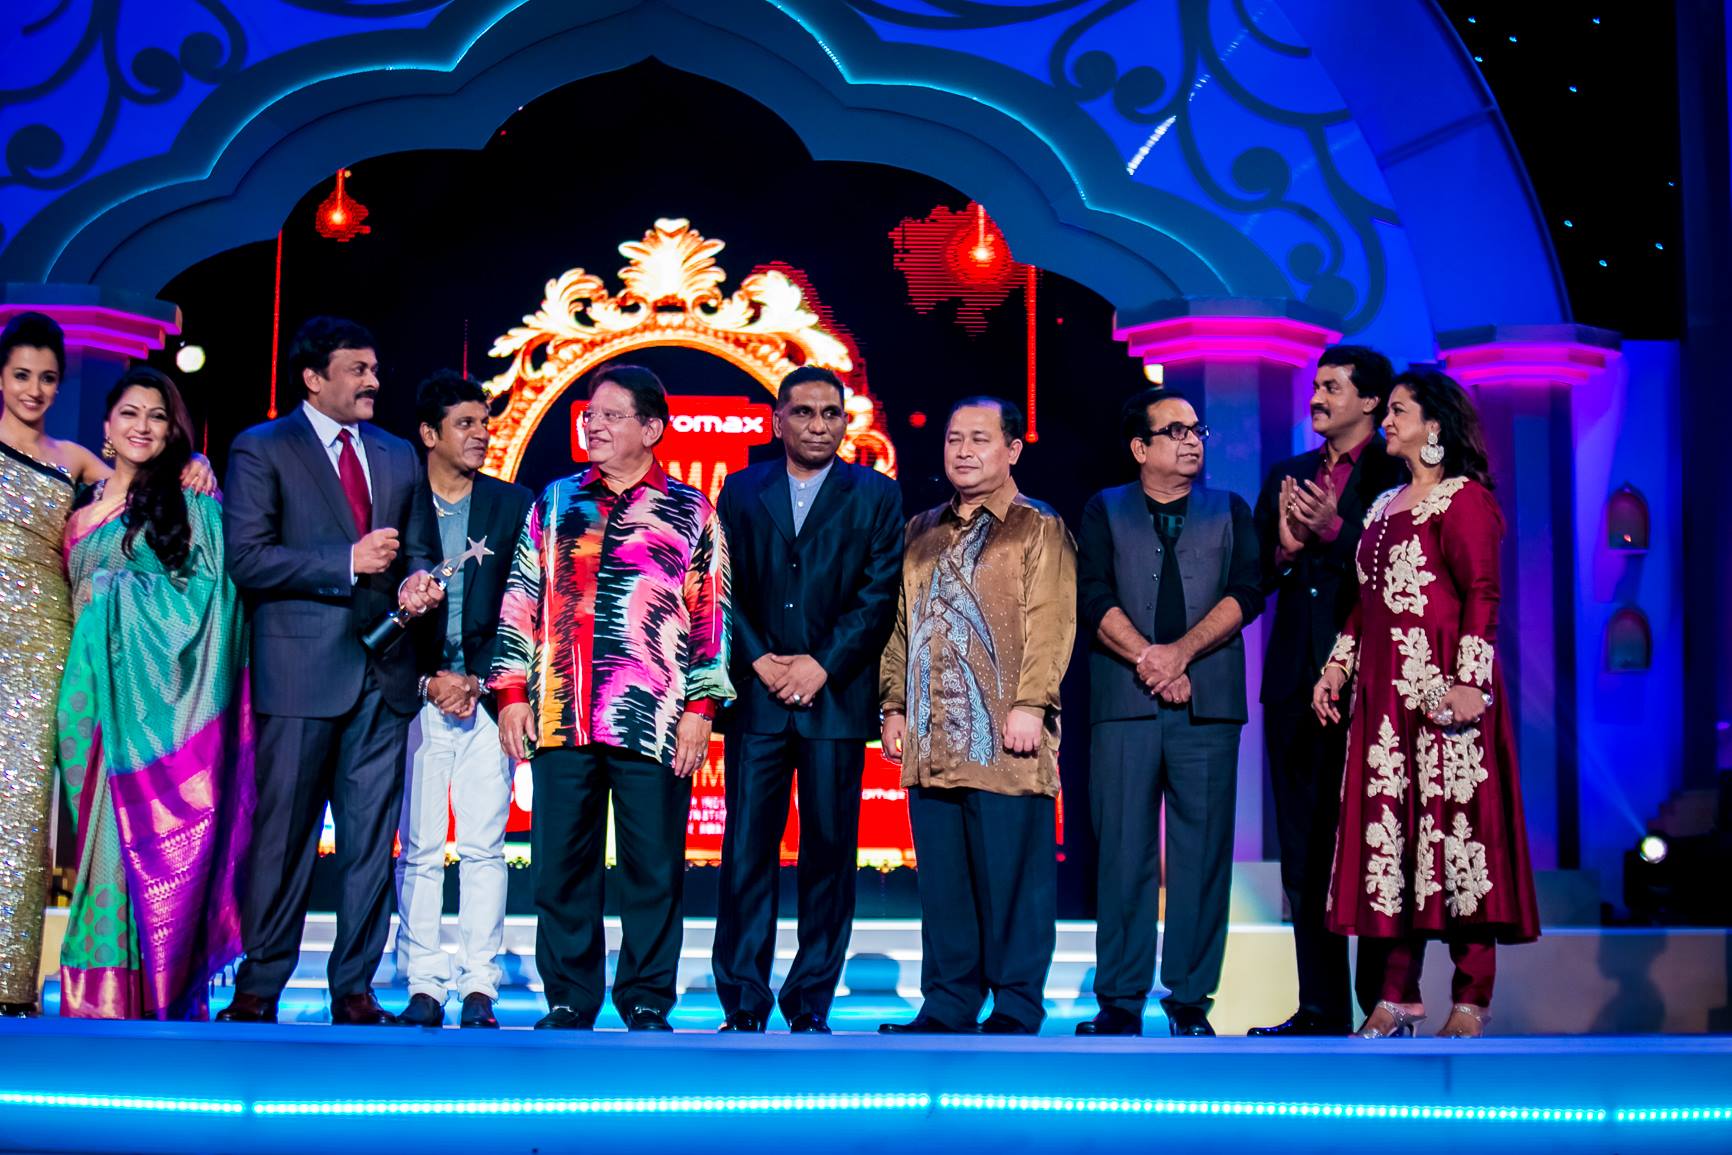 Chiranjeevi at SIIMA 2014 Awards